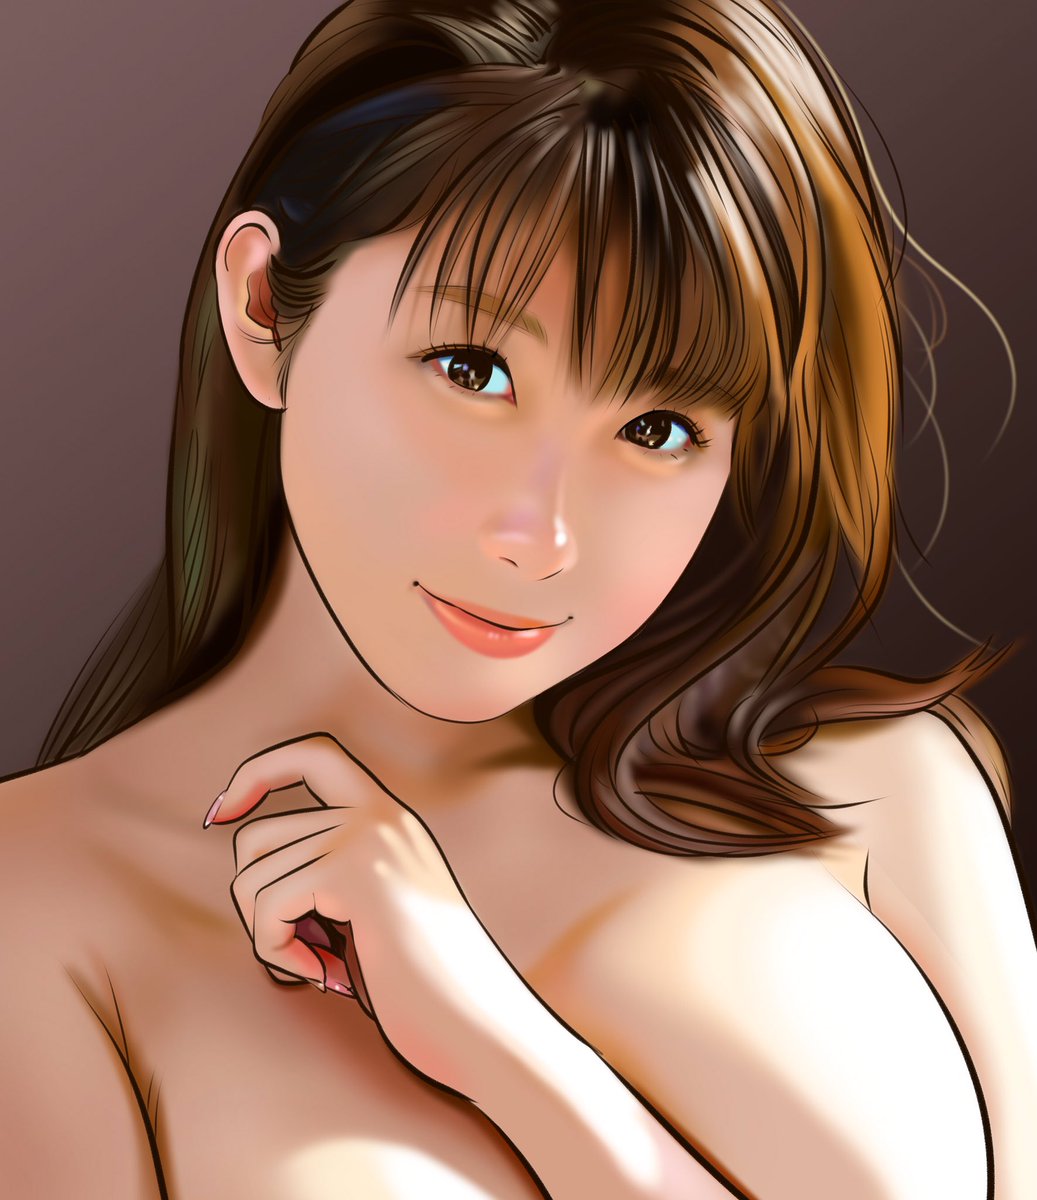 『三田サクラさん(@mitasakura_ )』

#イラスト #AV女優 #セクシー女優 #三田サクラ #illustration #portrait #sexymodel #sakura_mita